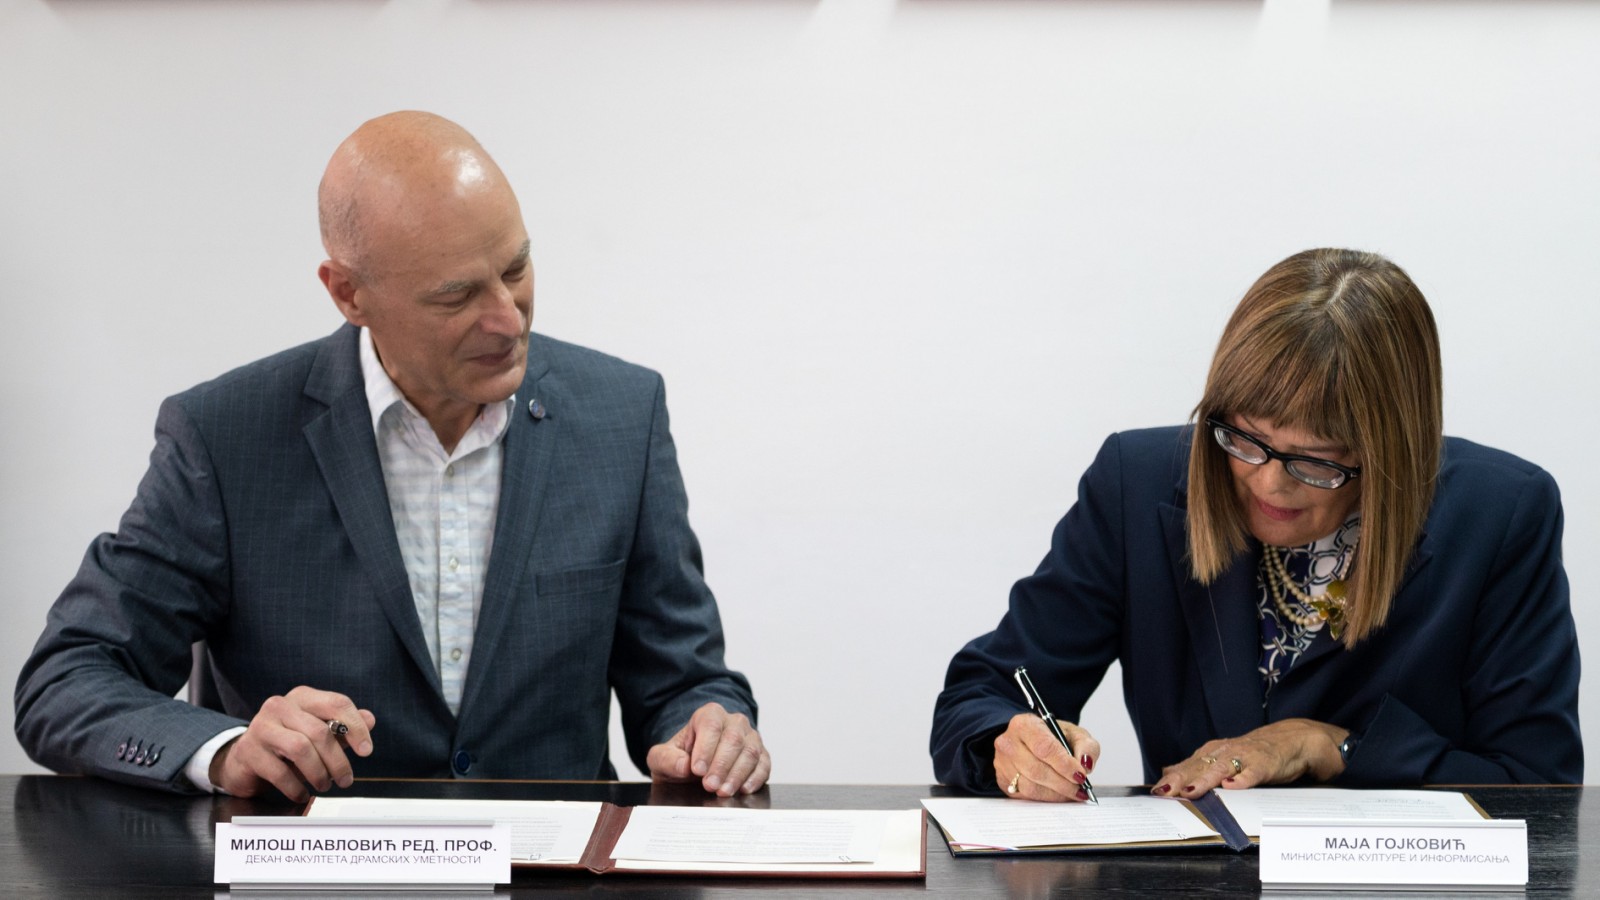 Гојковић и Павловић потписали Протокол о сарадњи између Министарства и ФДУ